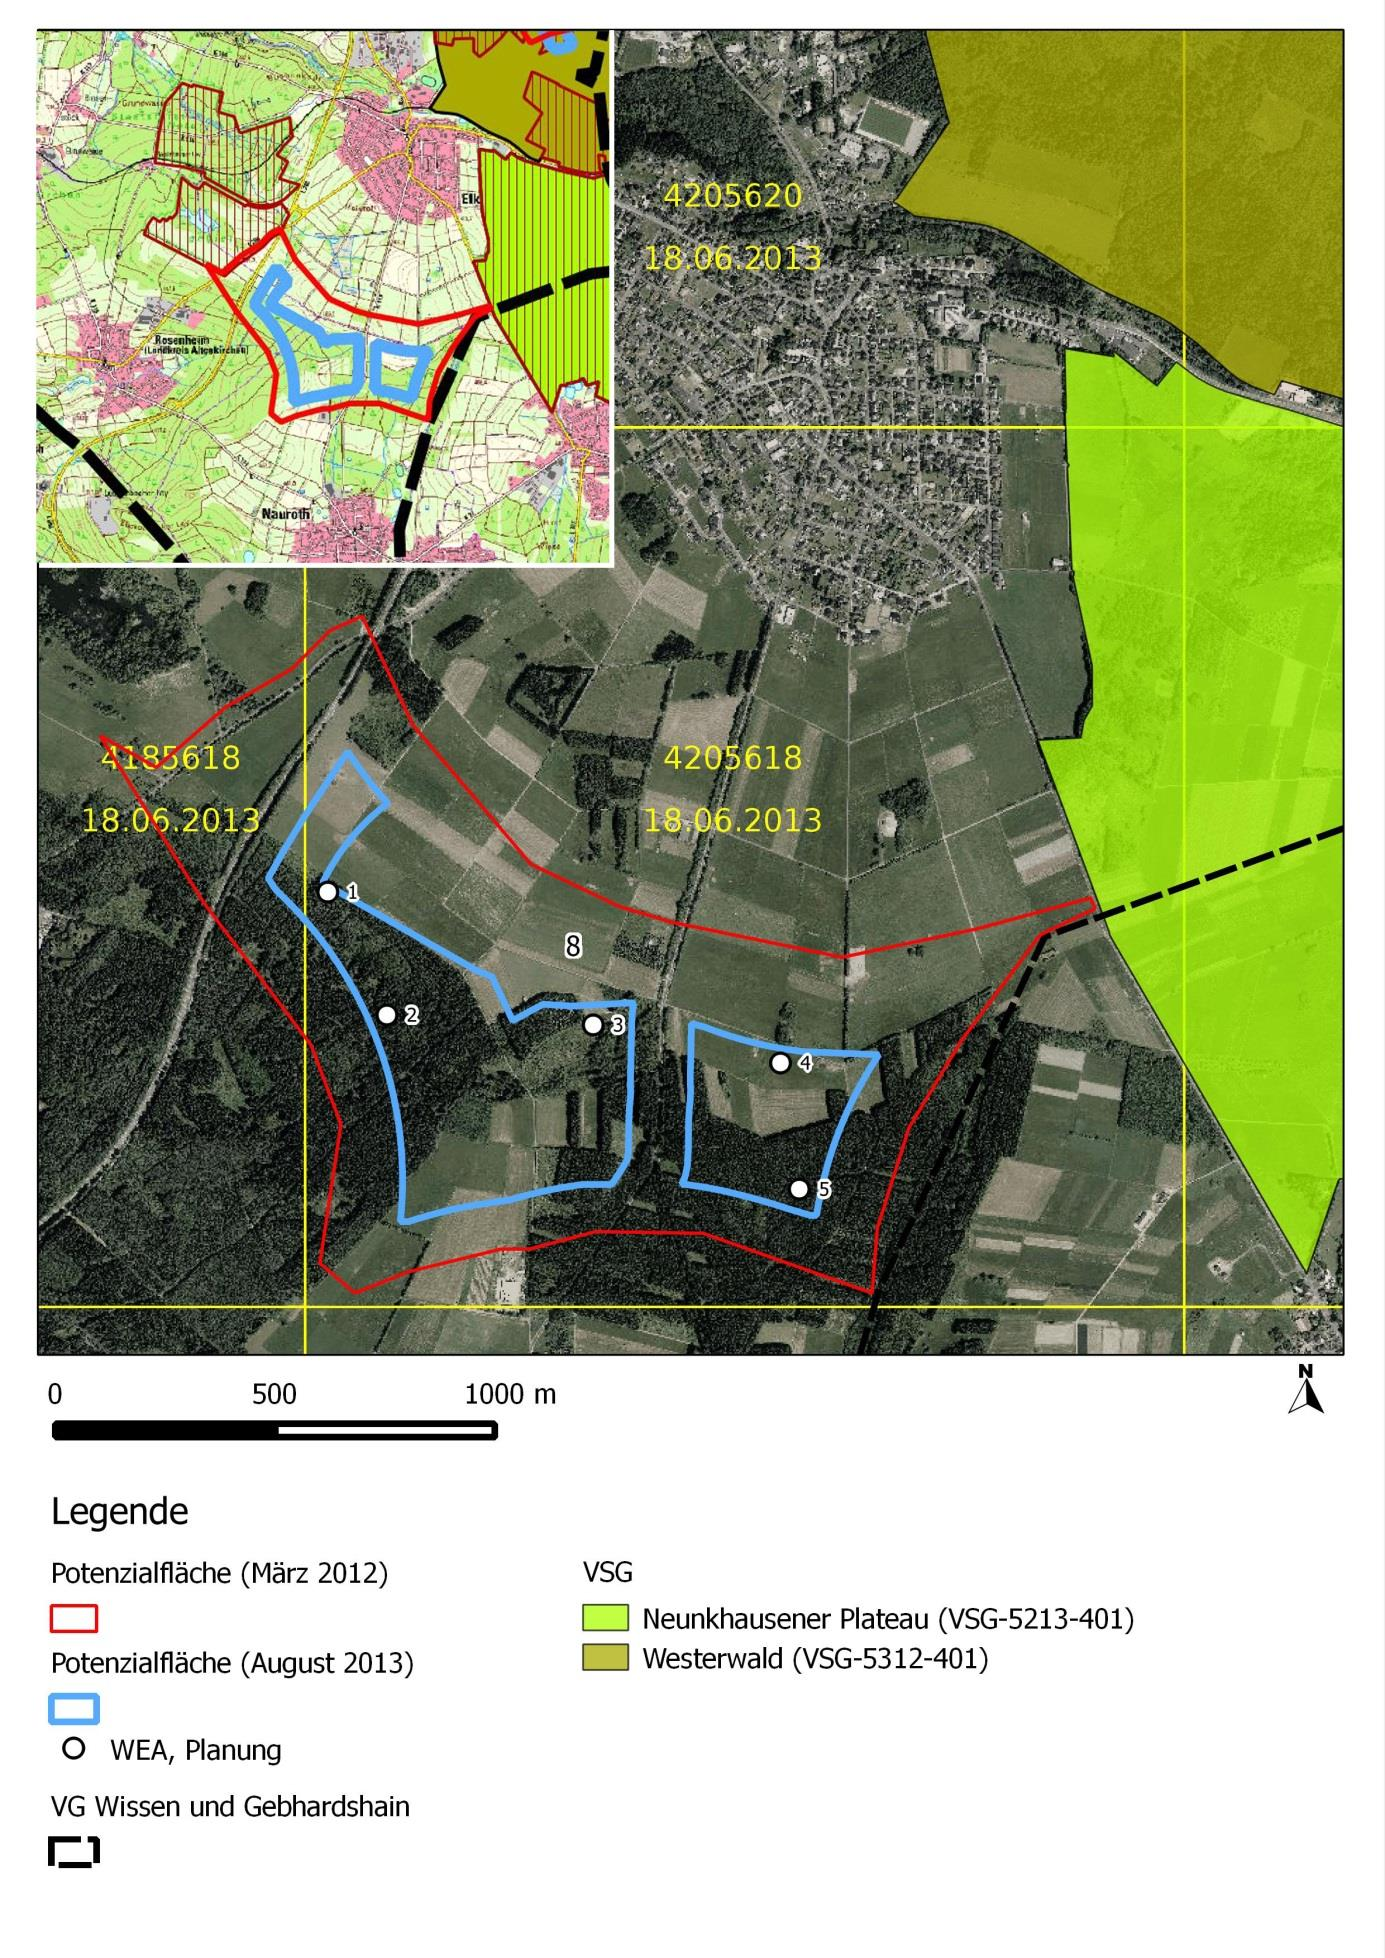 Abb. 6: Lageplan sowie Luftbild der Potenzialfläche 8 mit Darstellung der Abgrenzung im März 2012 und August 2013, sowie Darstellung einer